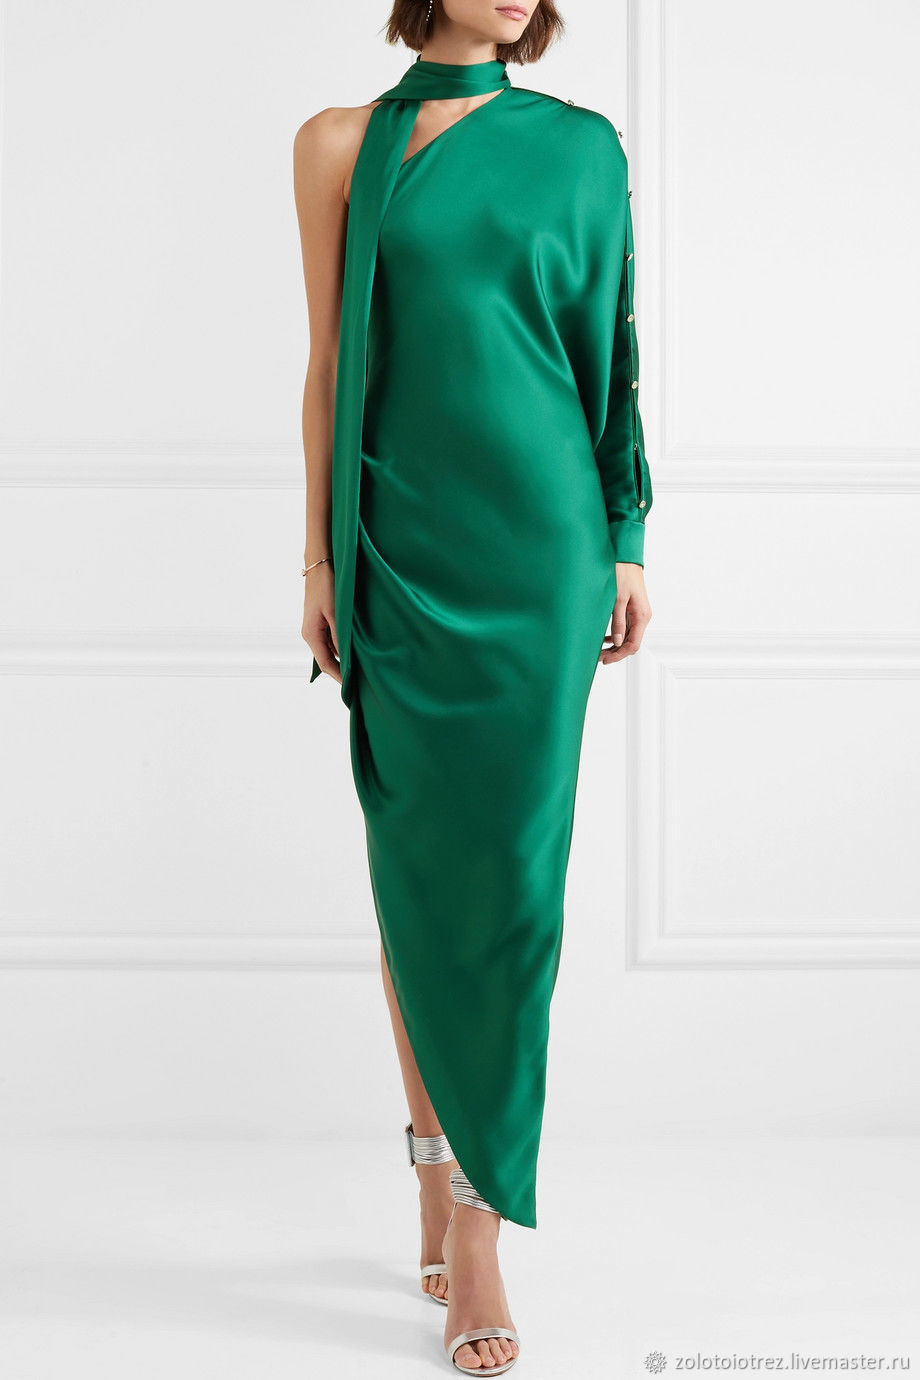 Сандро зеленое платье зеленое шелковое